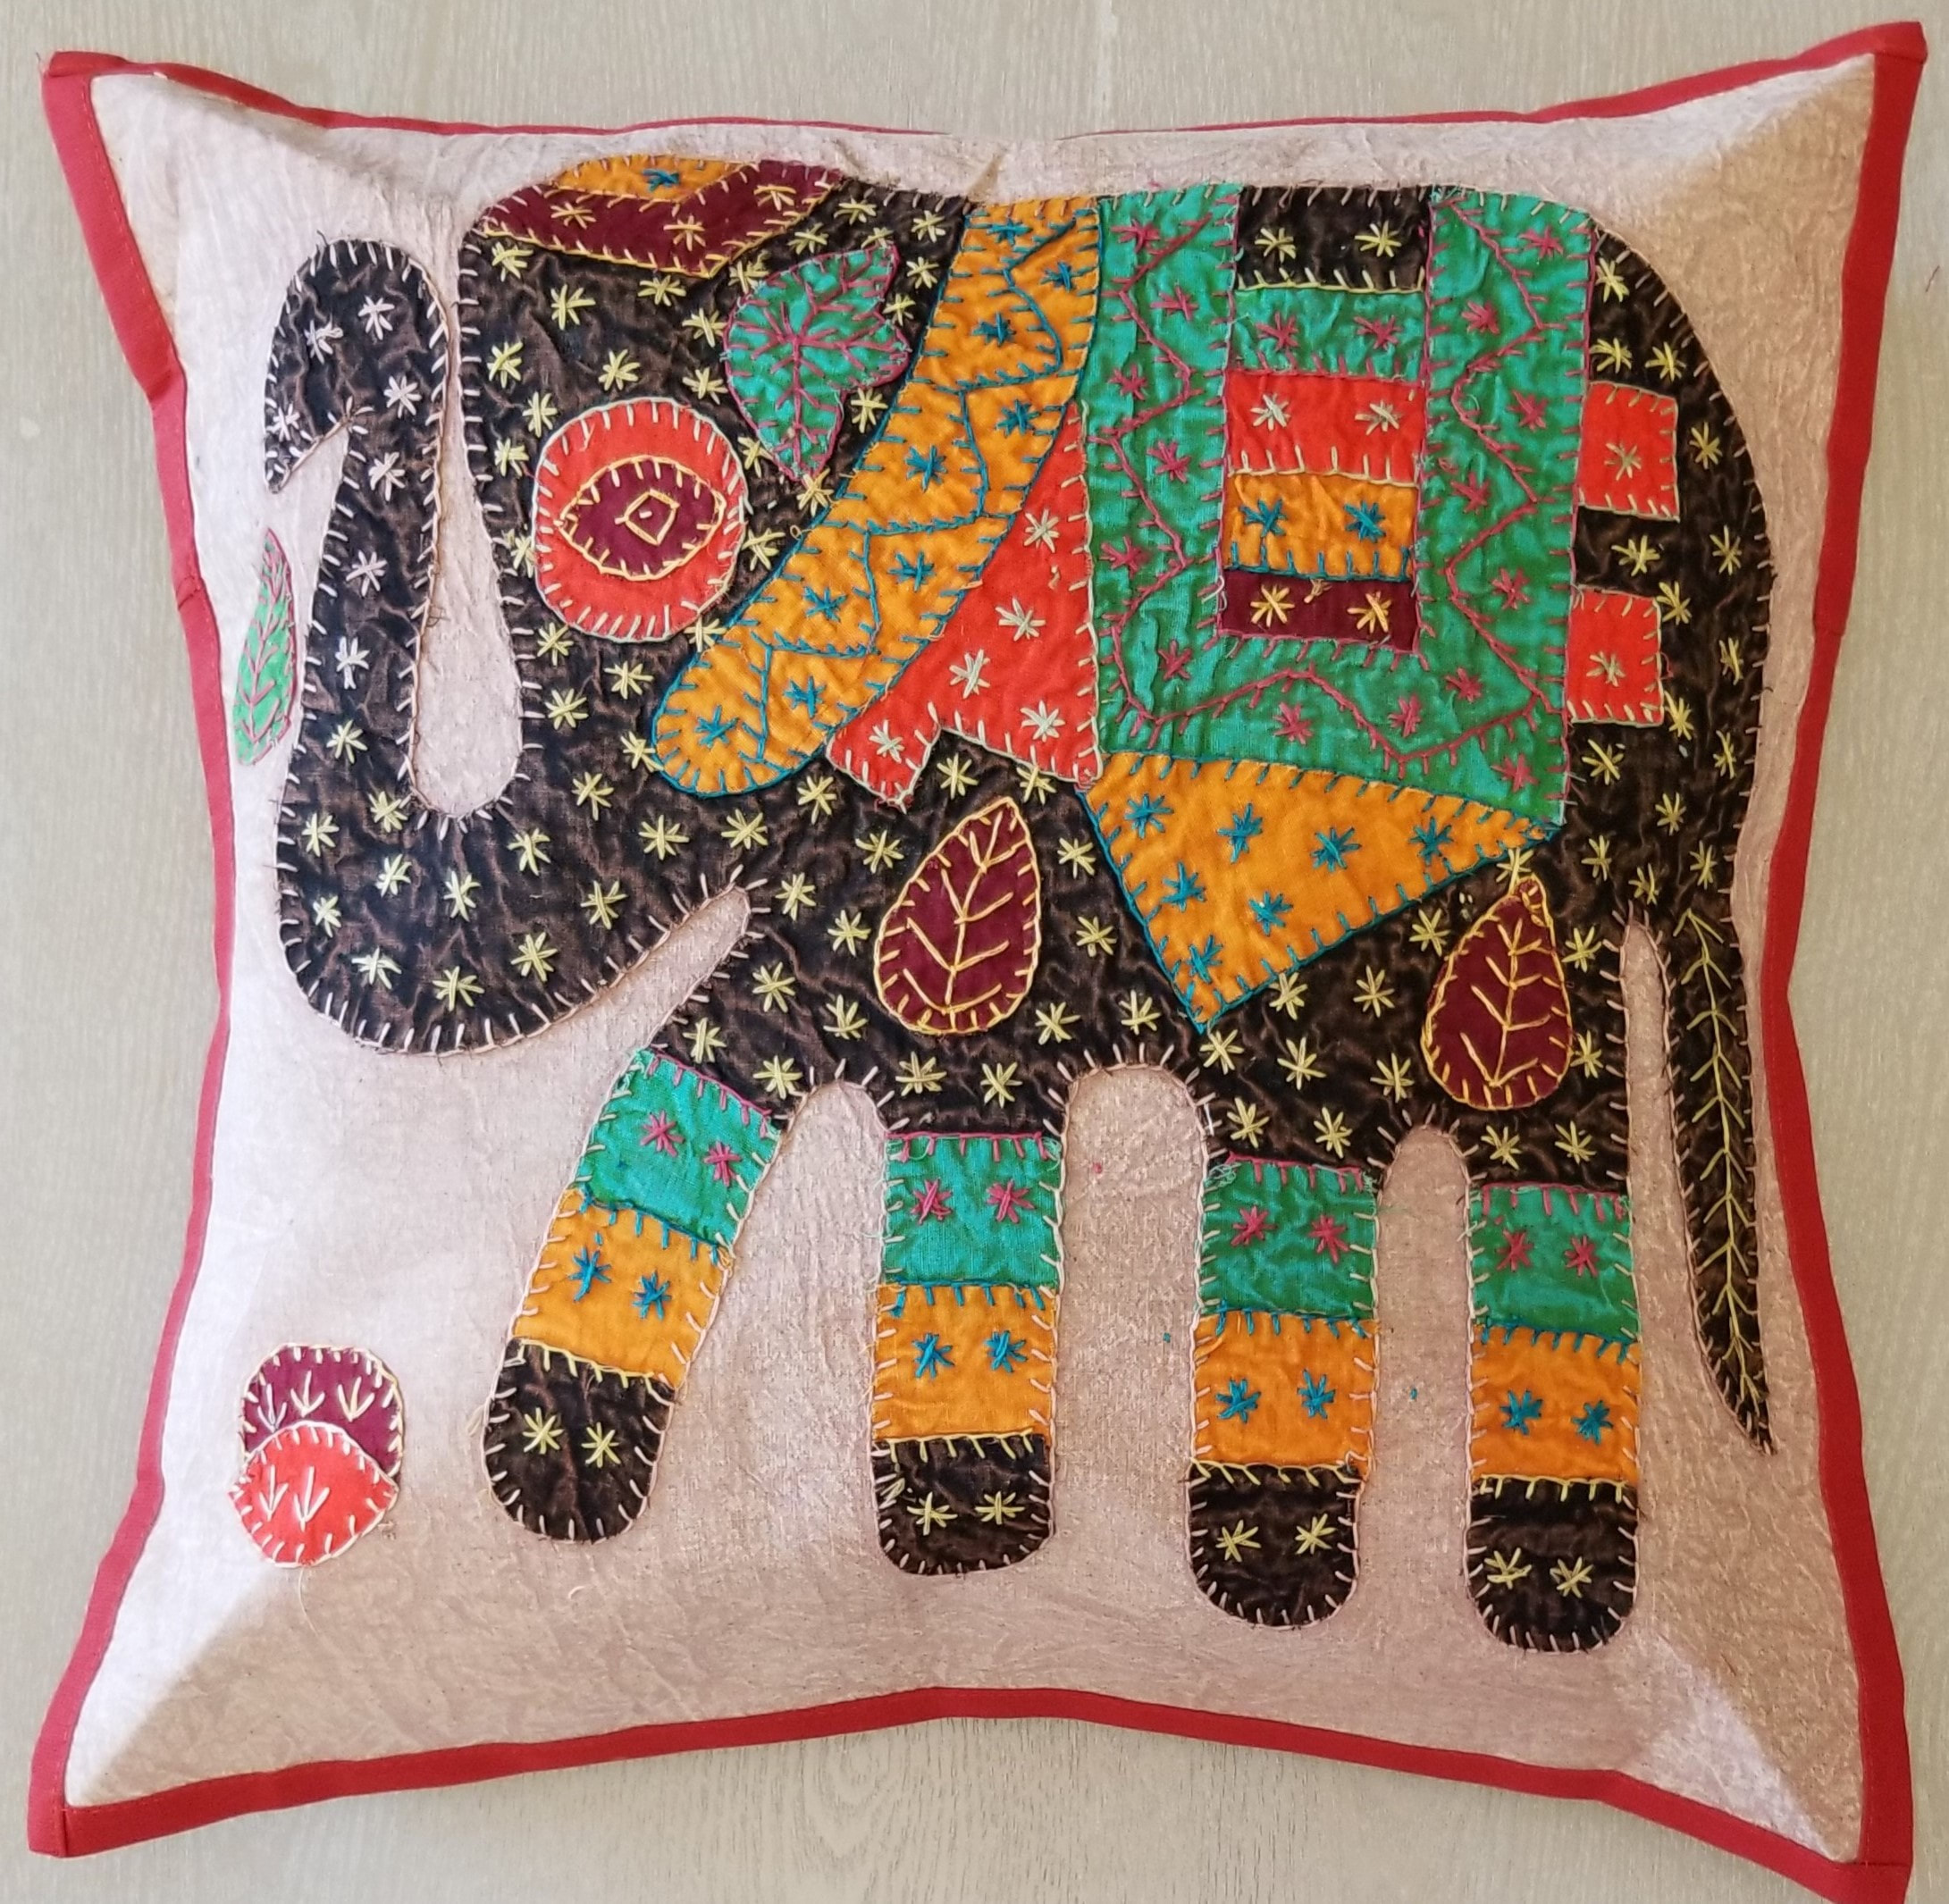 Details about   5pcs-25pcs Applique Patchwork Elephant Work Cushion Covers Wholesale Lot 